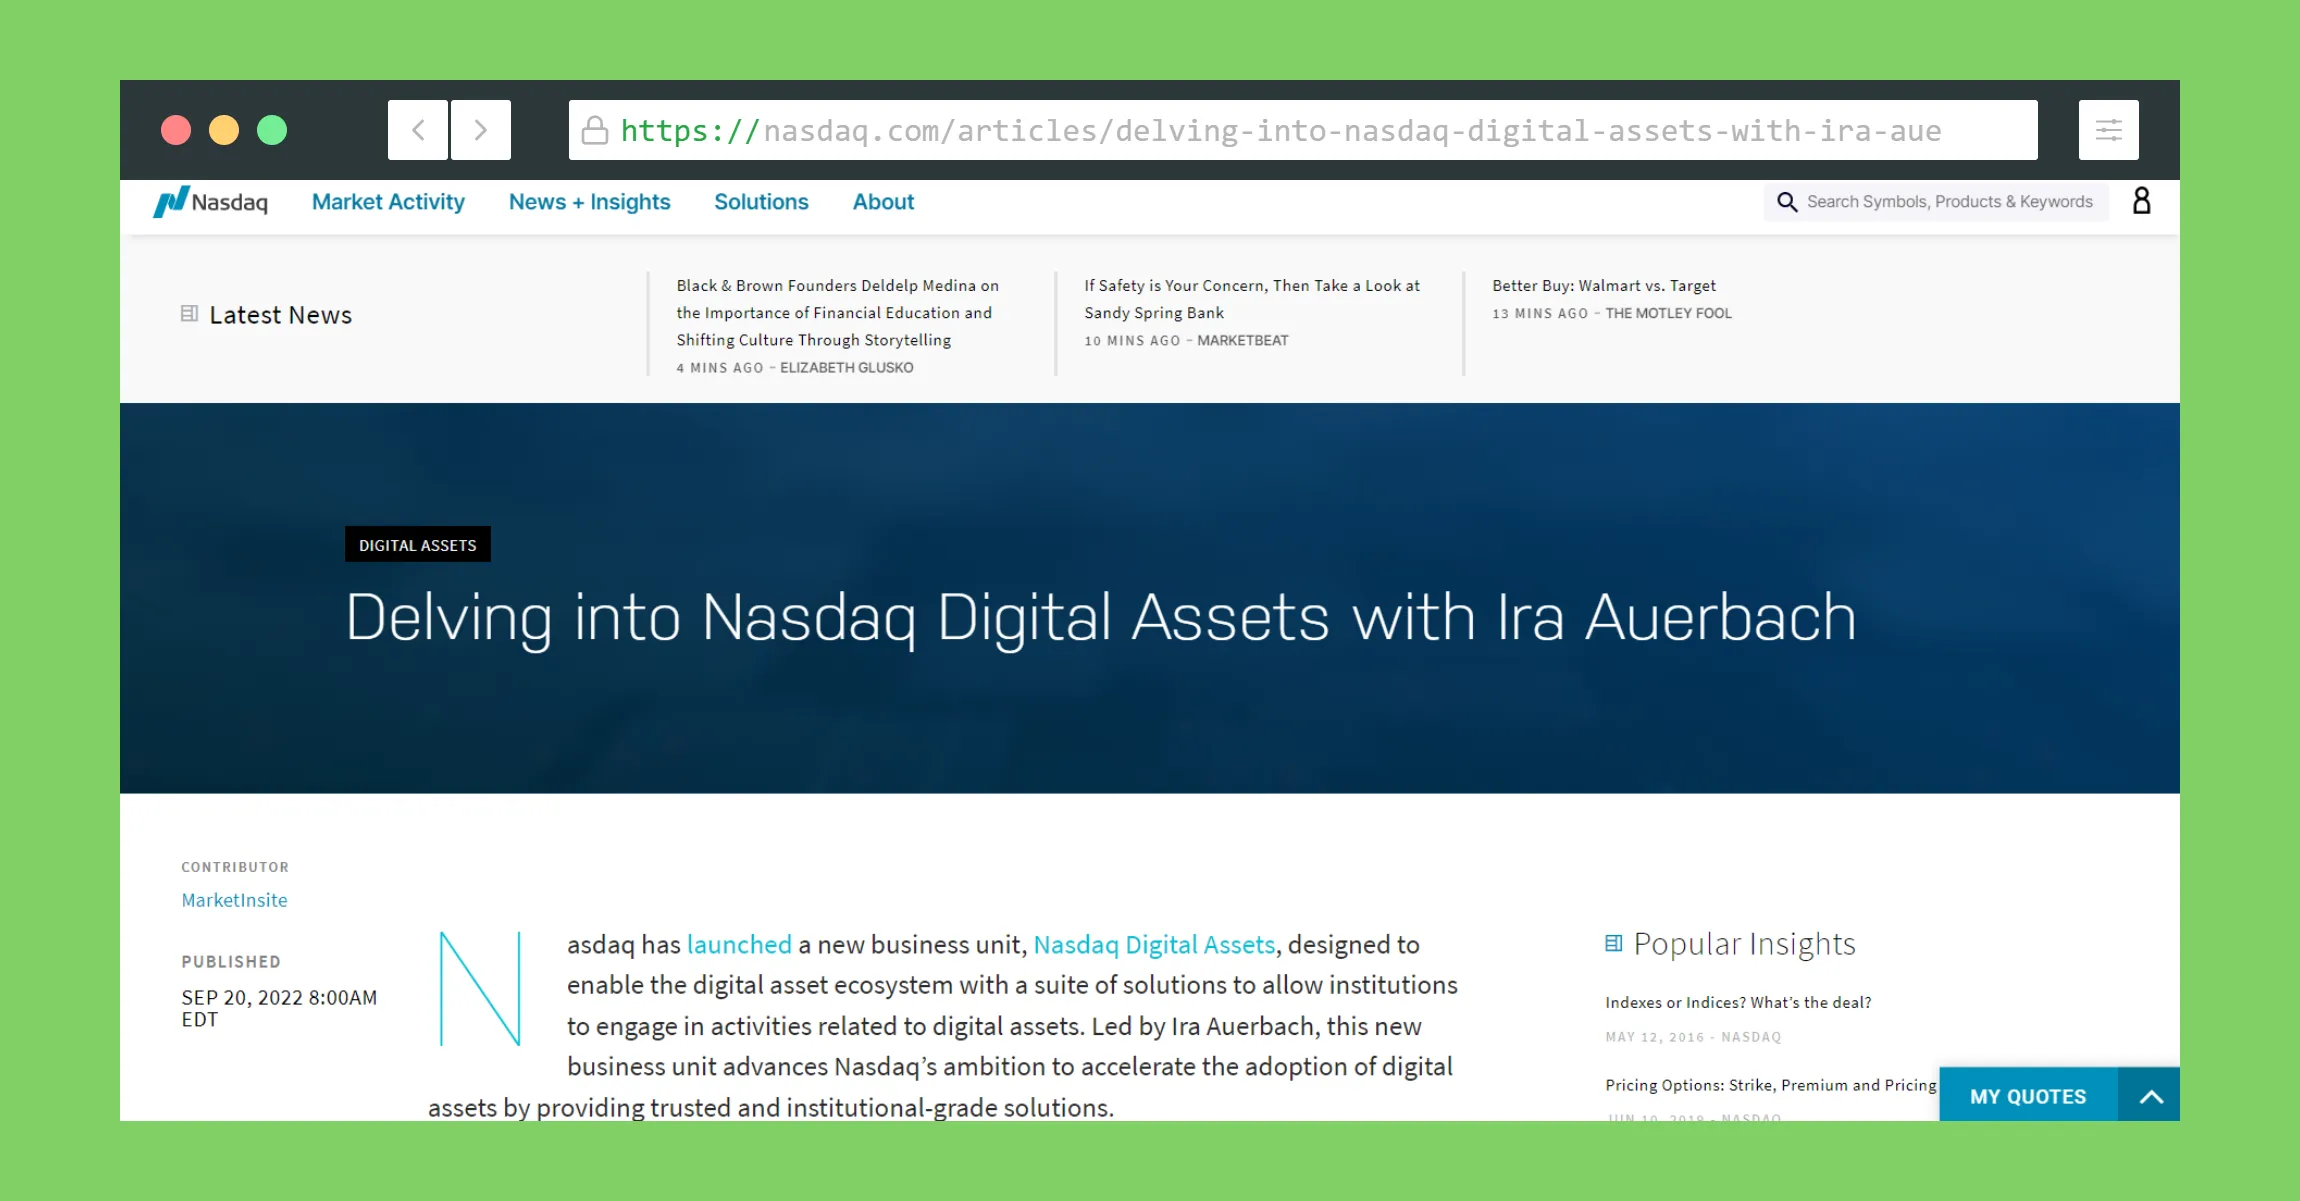 Entrevista: Profundizando en los activos digitales de Nasdaq con Ira Auerbach